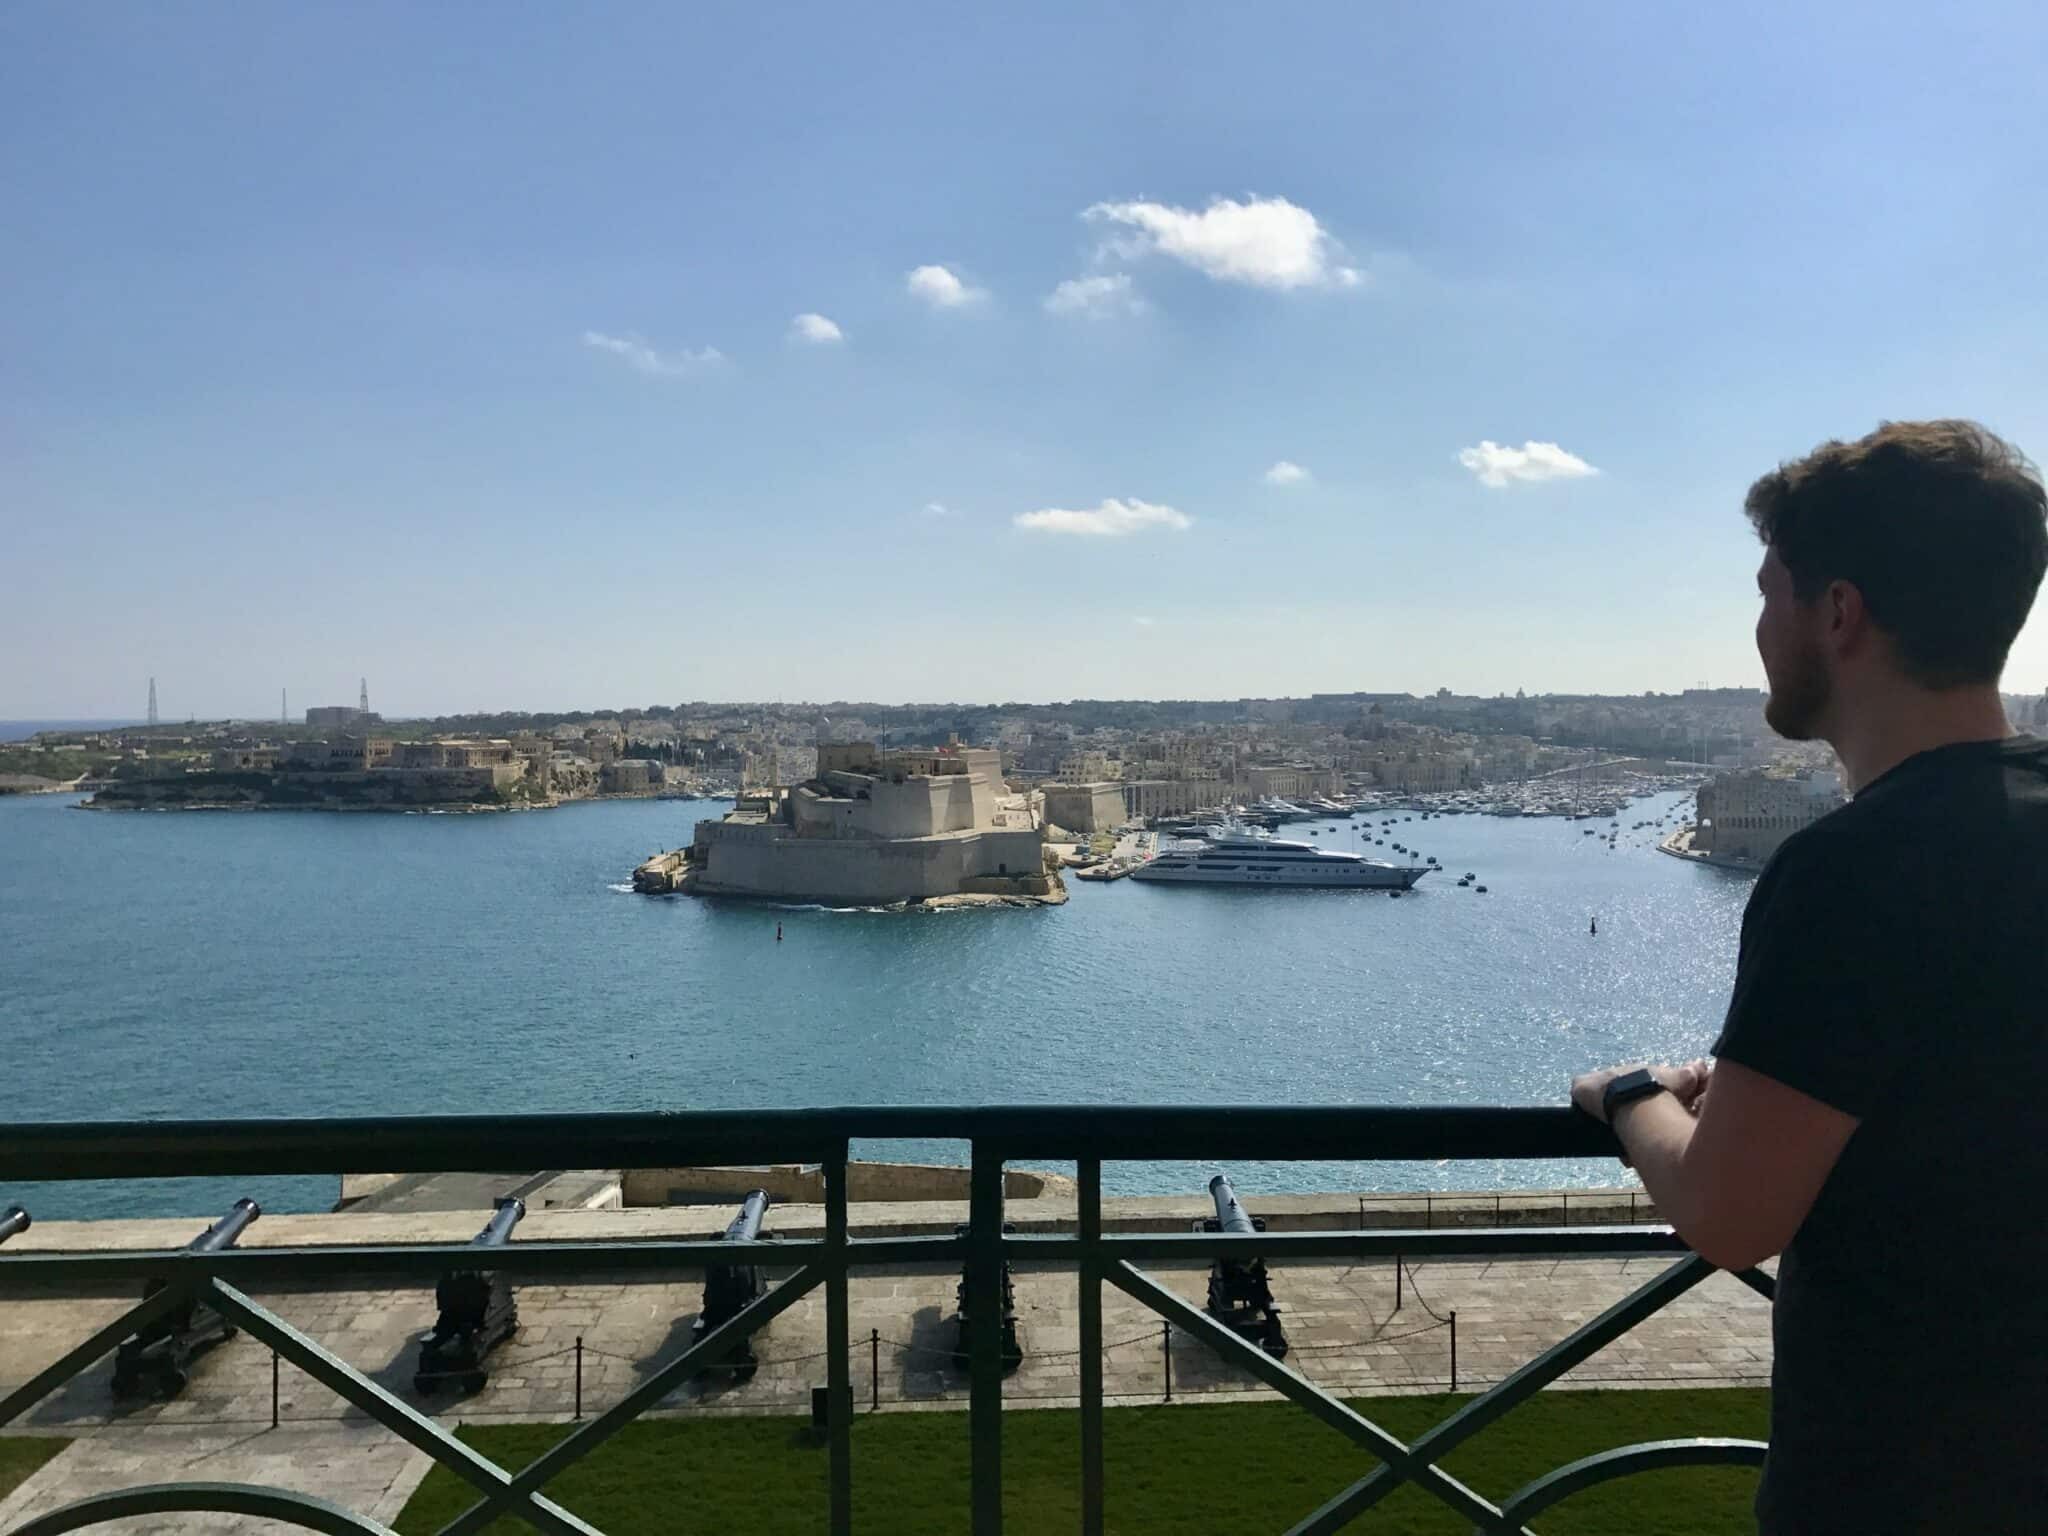 Malta – getting summer feelings in winter